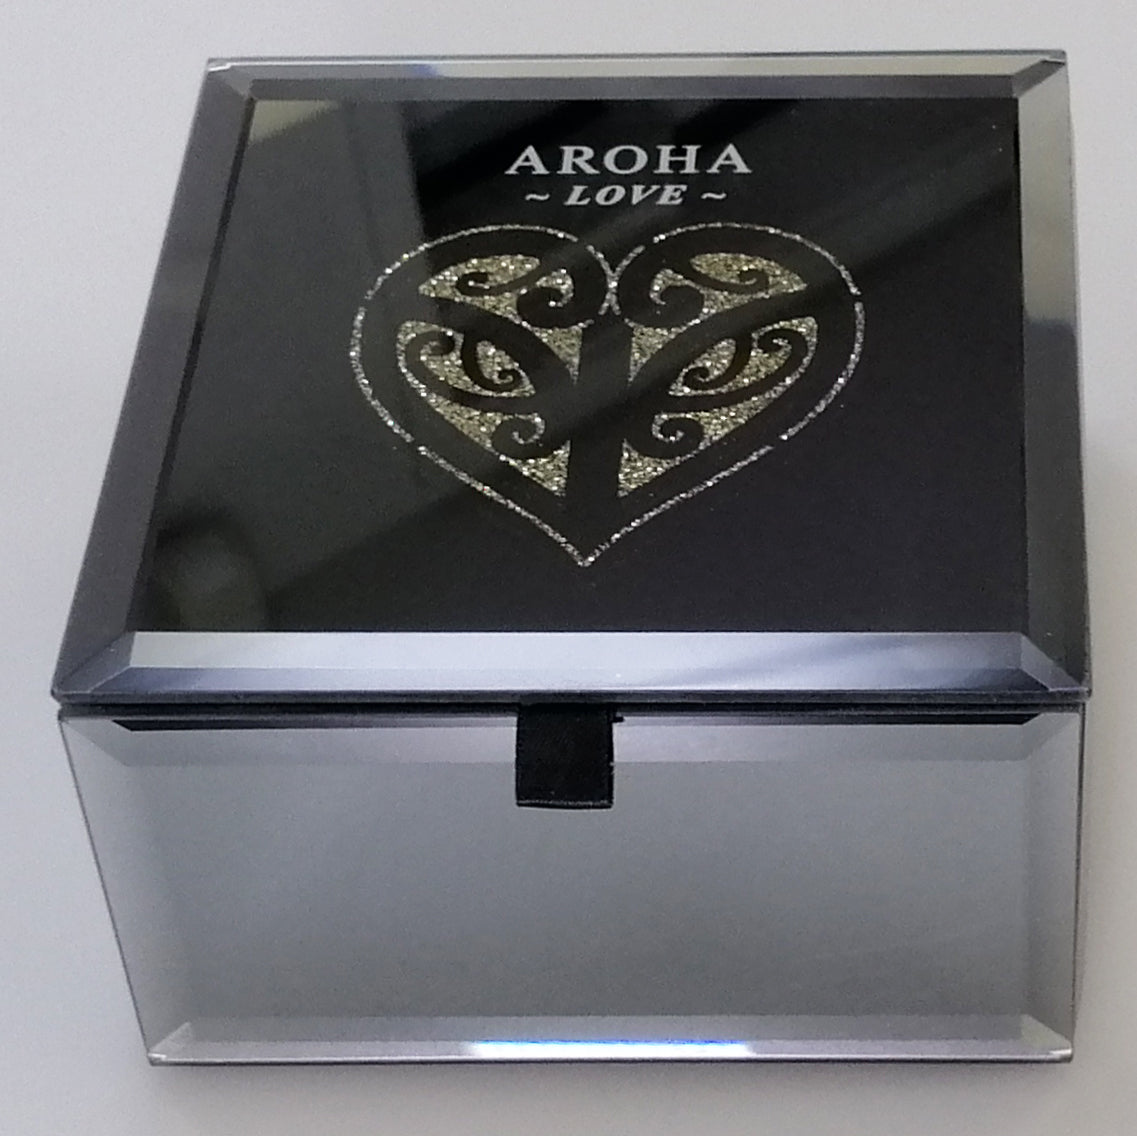 Mirror Multi-Crystal Aroha Medium Trinket Box